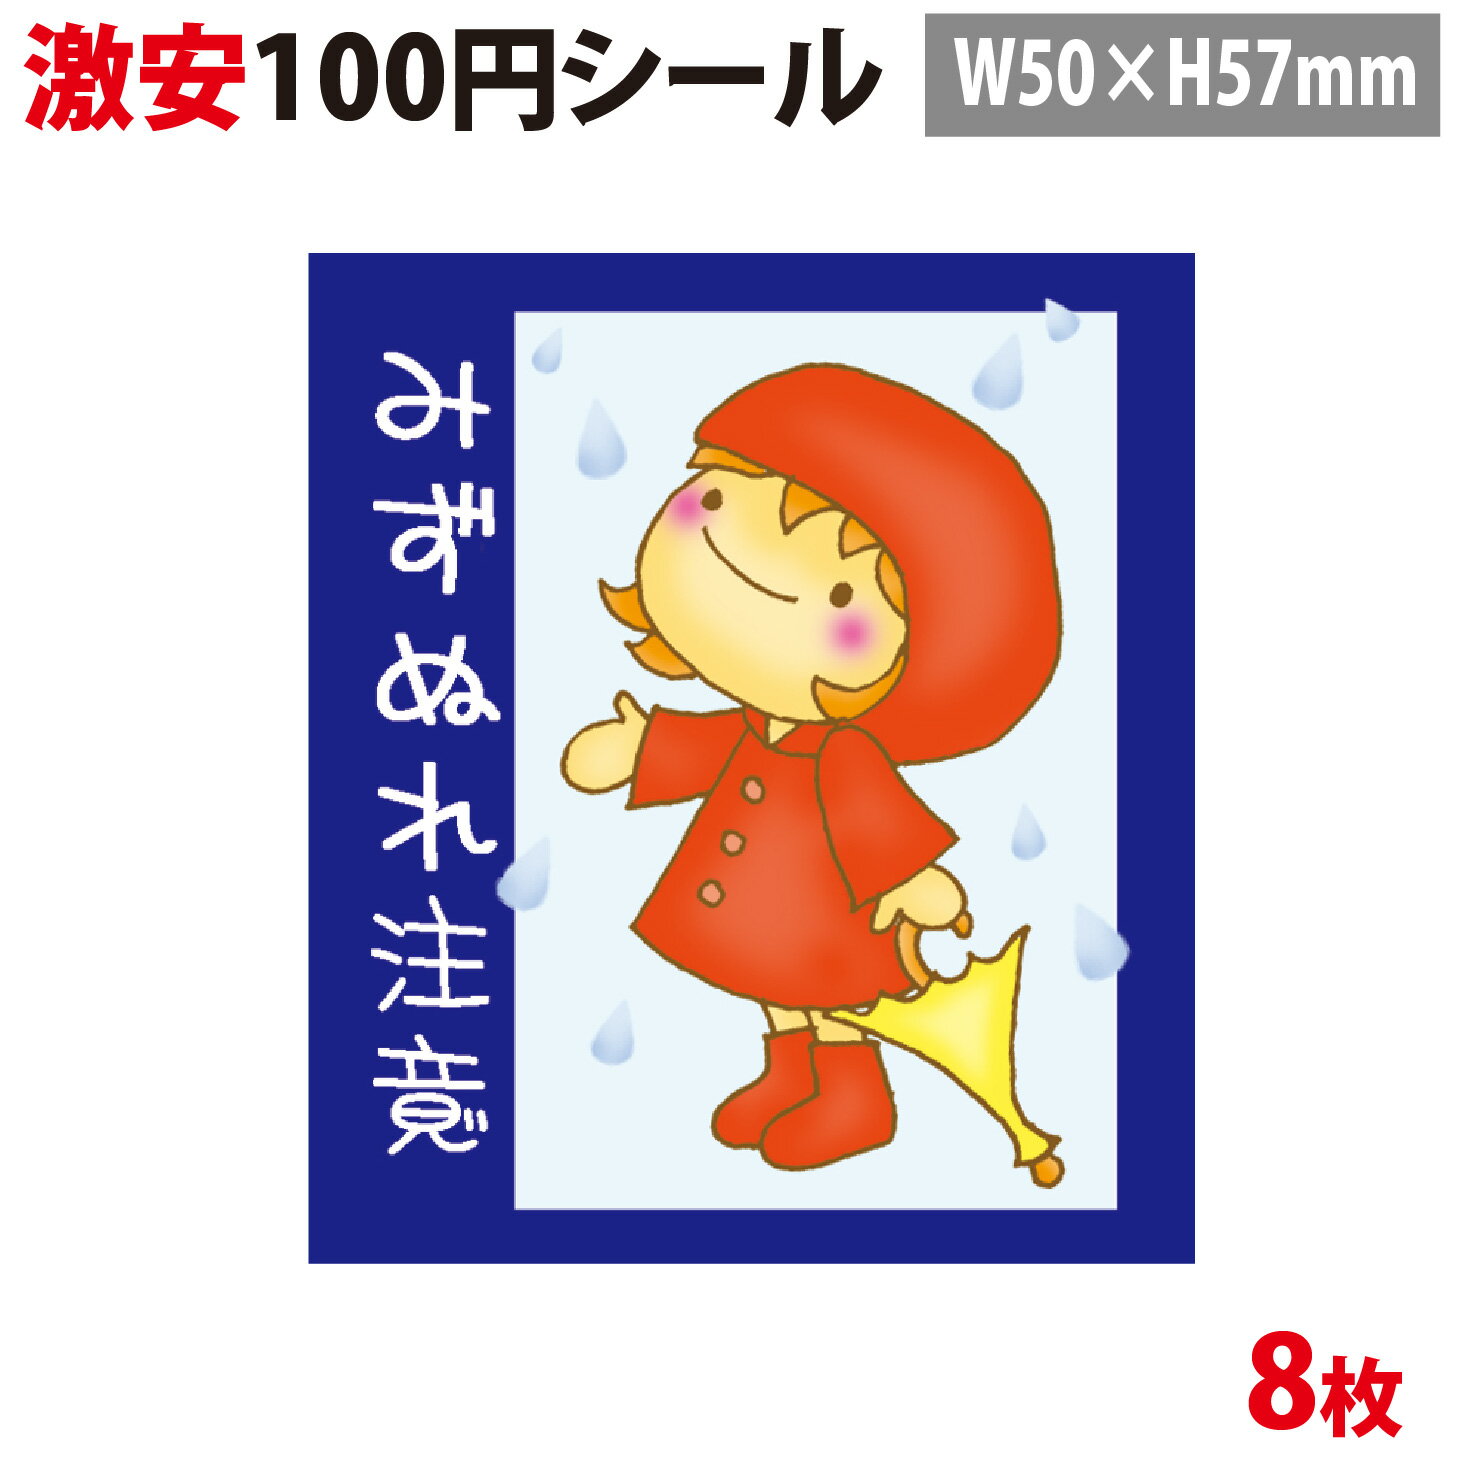 【100円シール】水濡れ注意 シール宅配シール8片